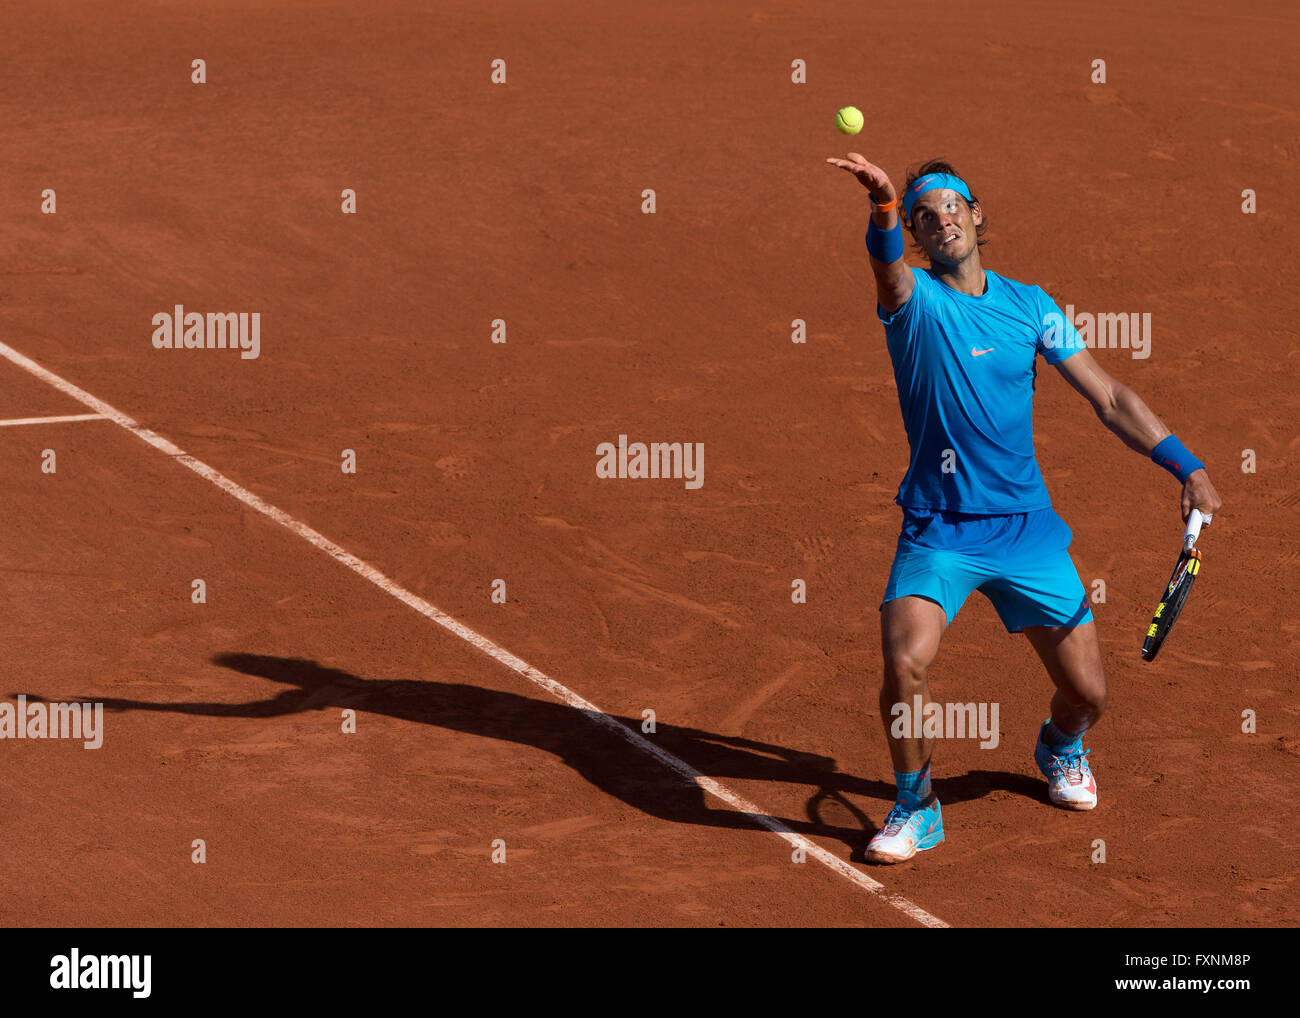 Rafael Nadal, ESP, Open de France 2015, Grand Chelem Tennis Turnier, Roland Garros, Paris, Frankreich Banque D'Images